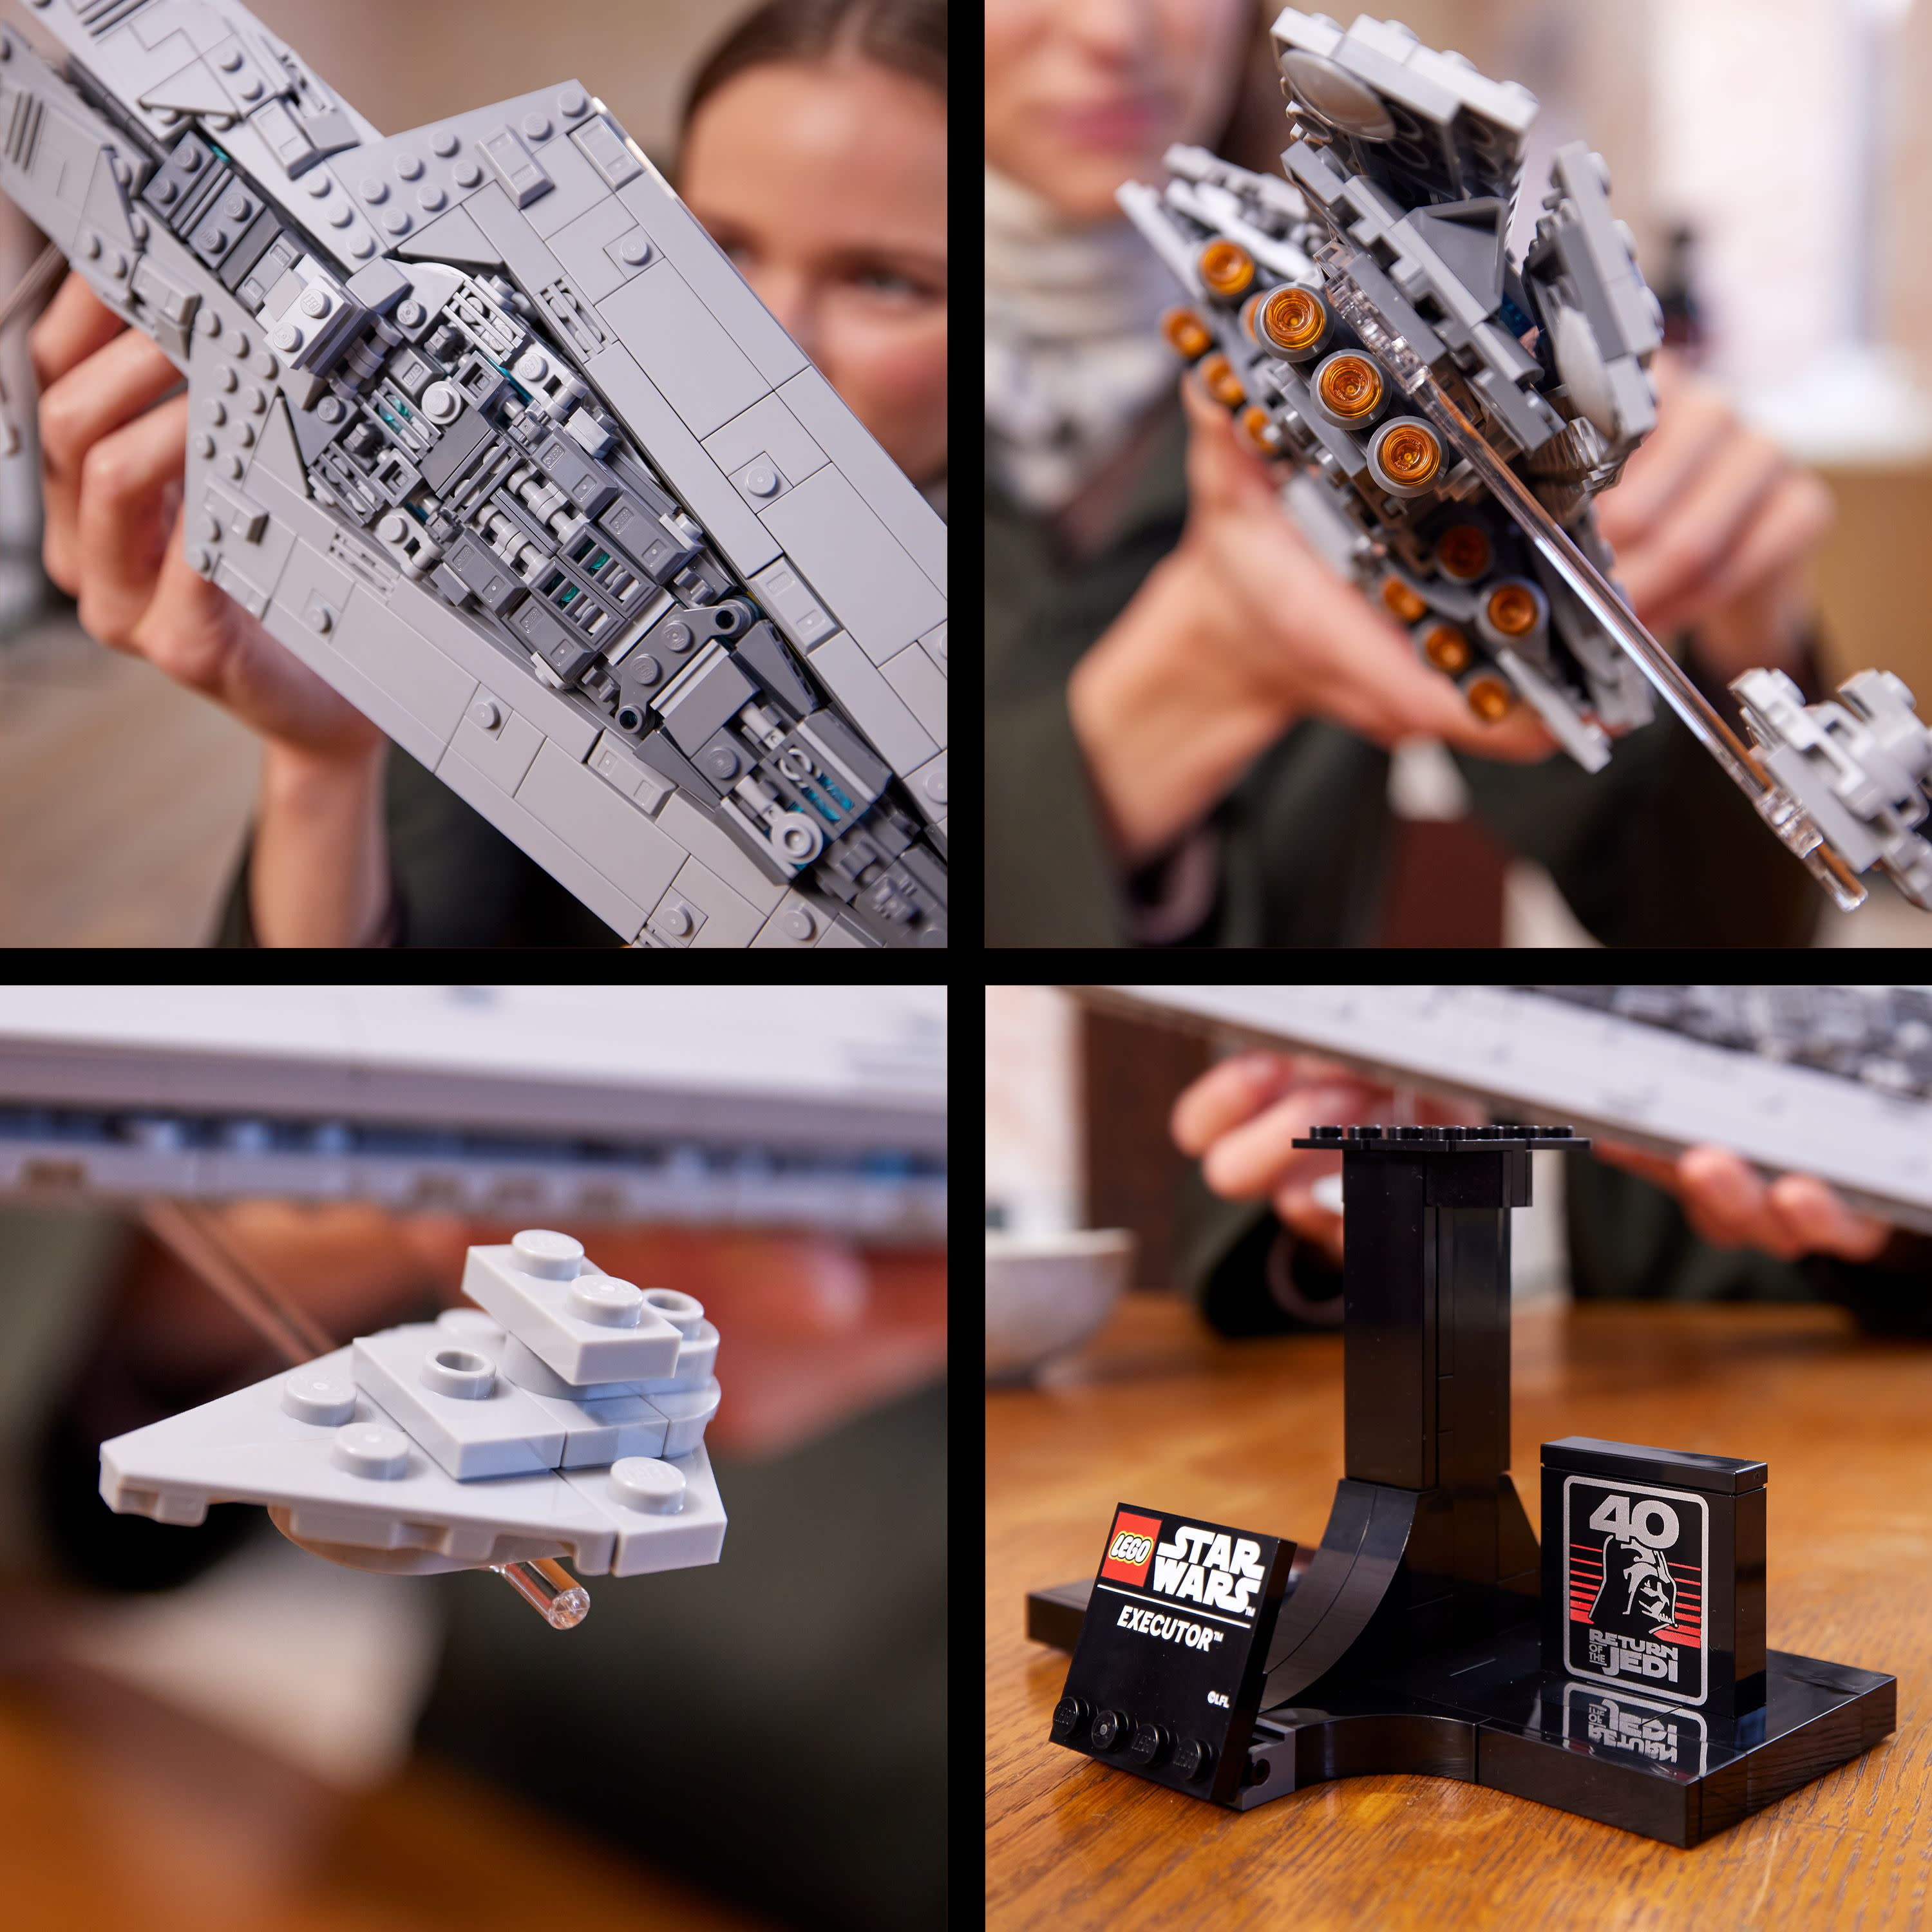 LEGO 43-Inch 'Star Wars' Imperial Star Destroyer